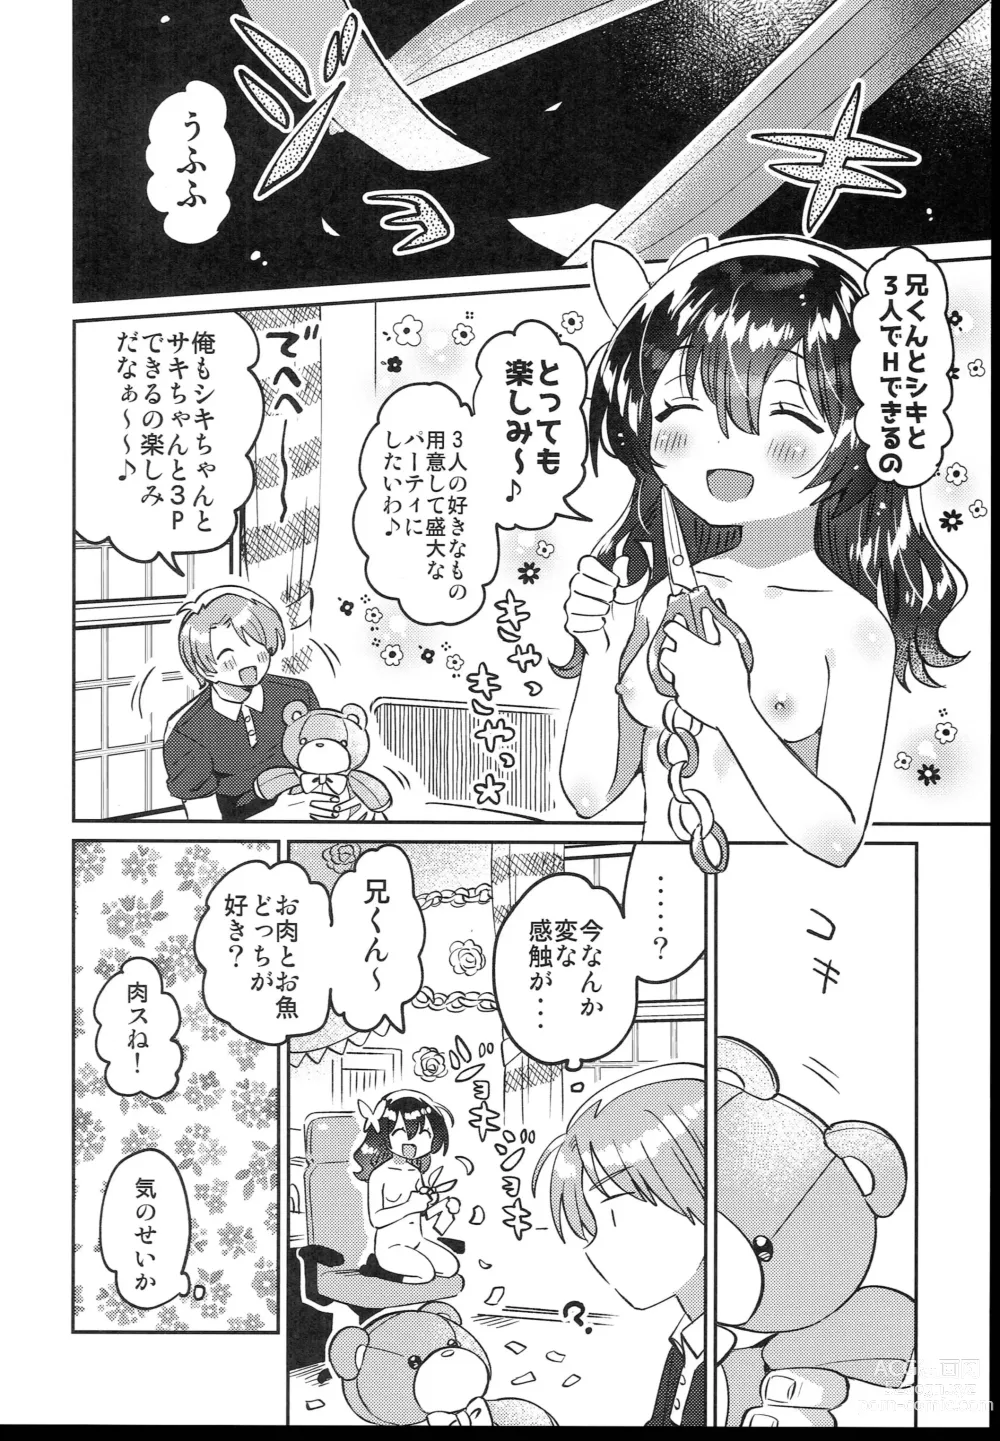 Page 24 of doujinshi Futago no Ane to Ecchi Dekiru!